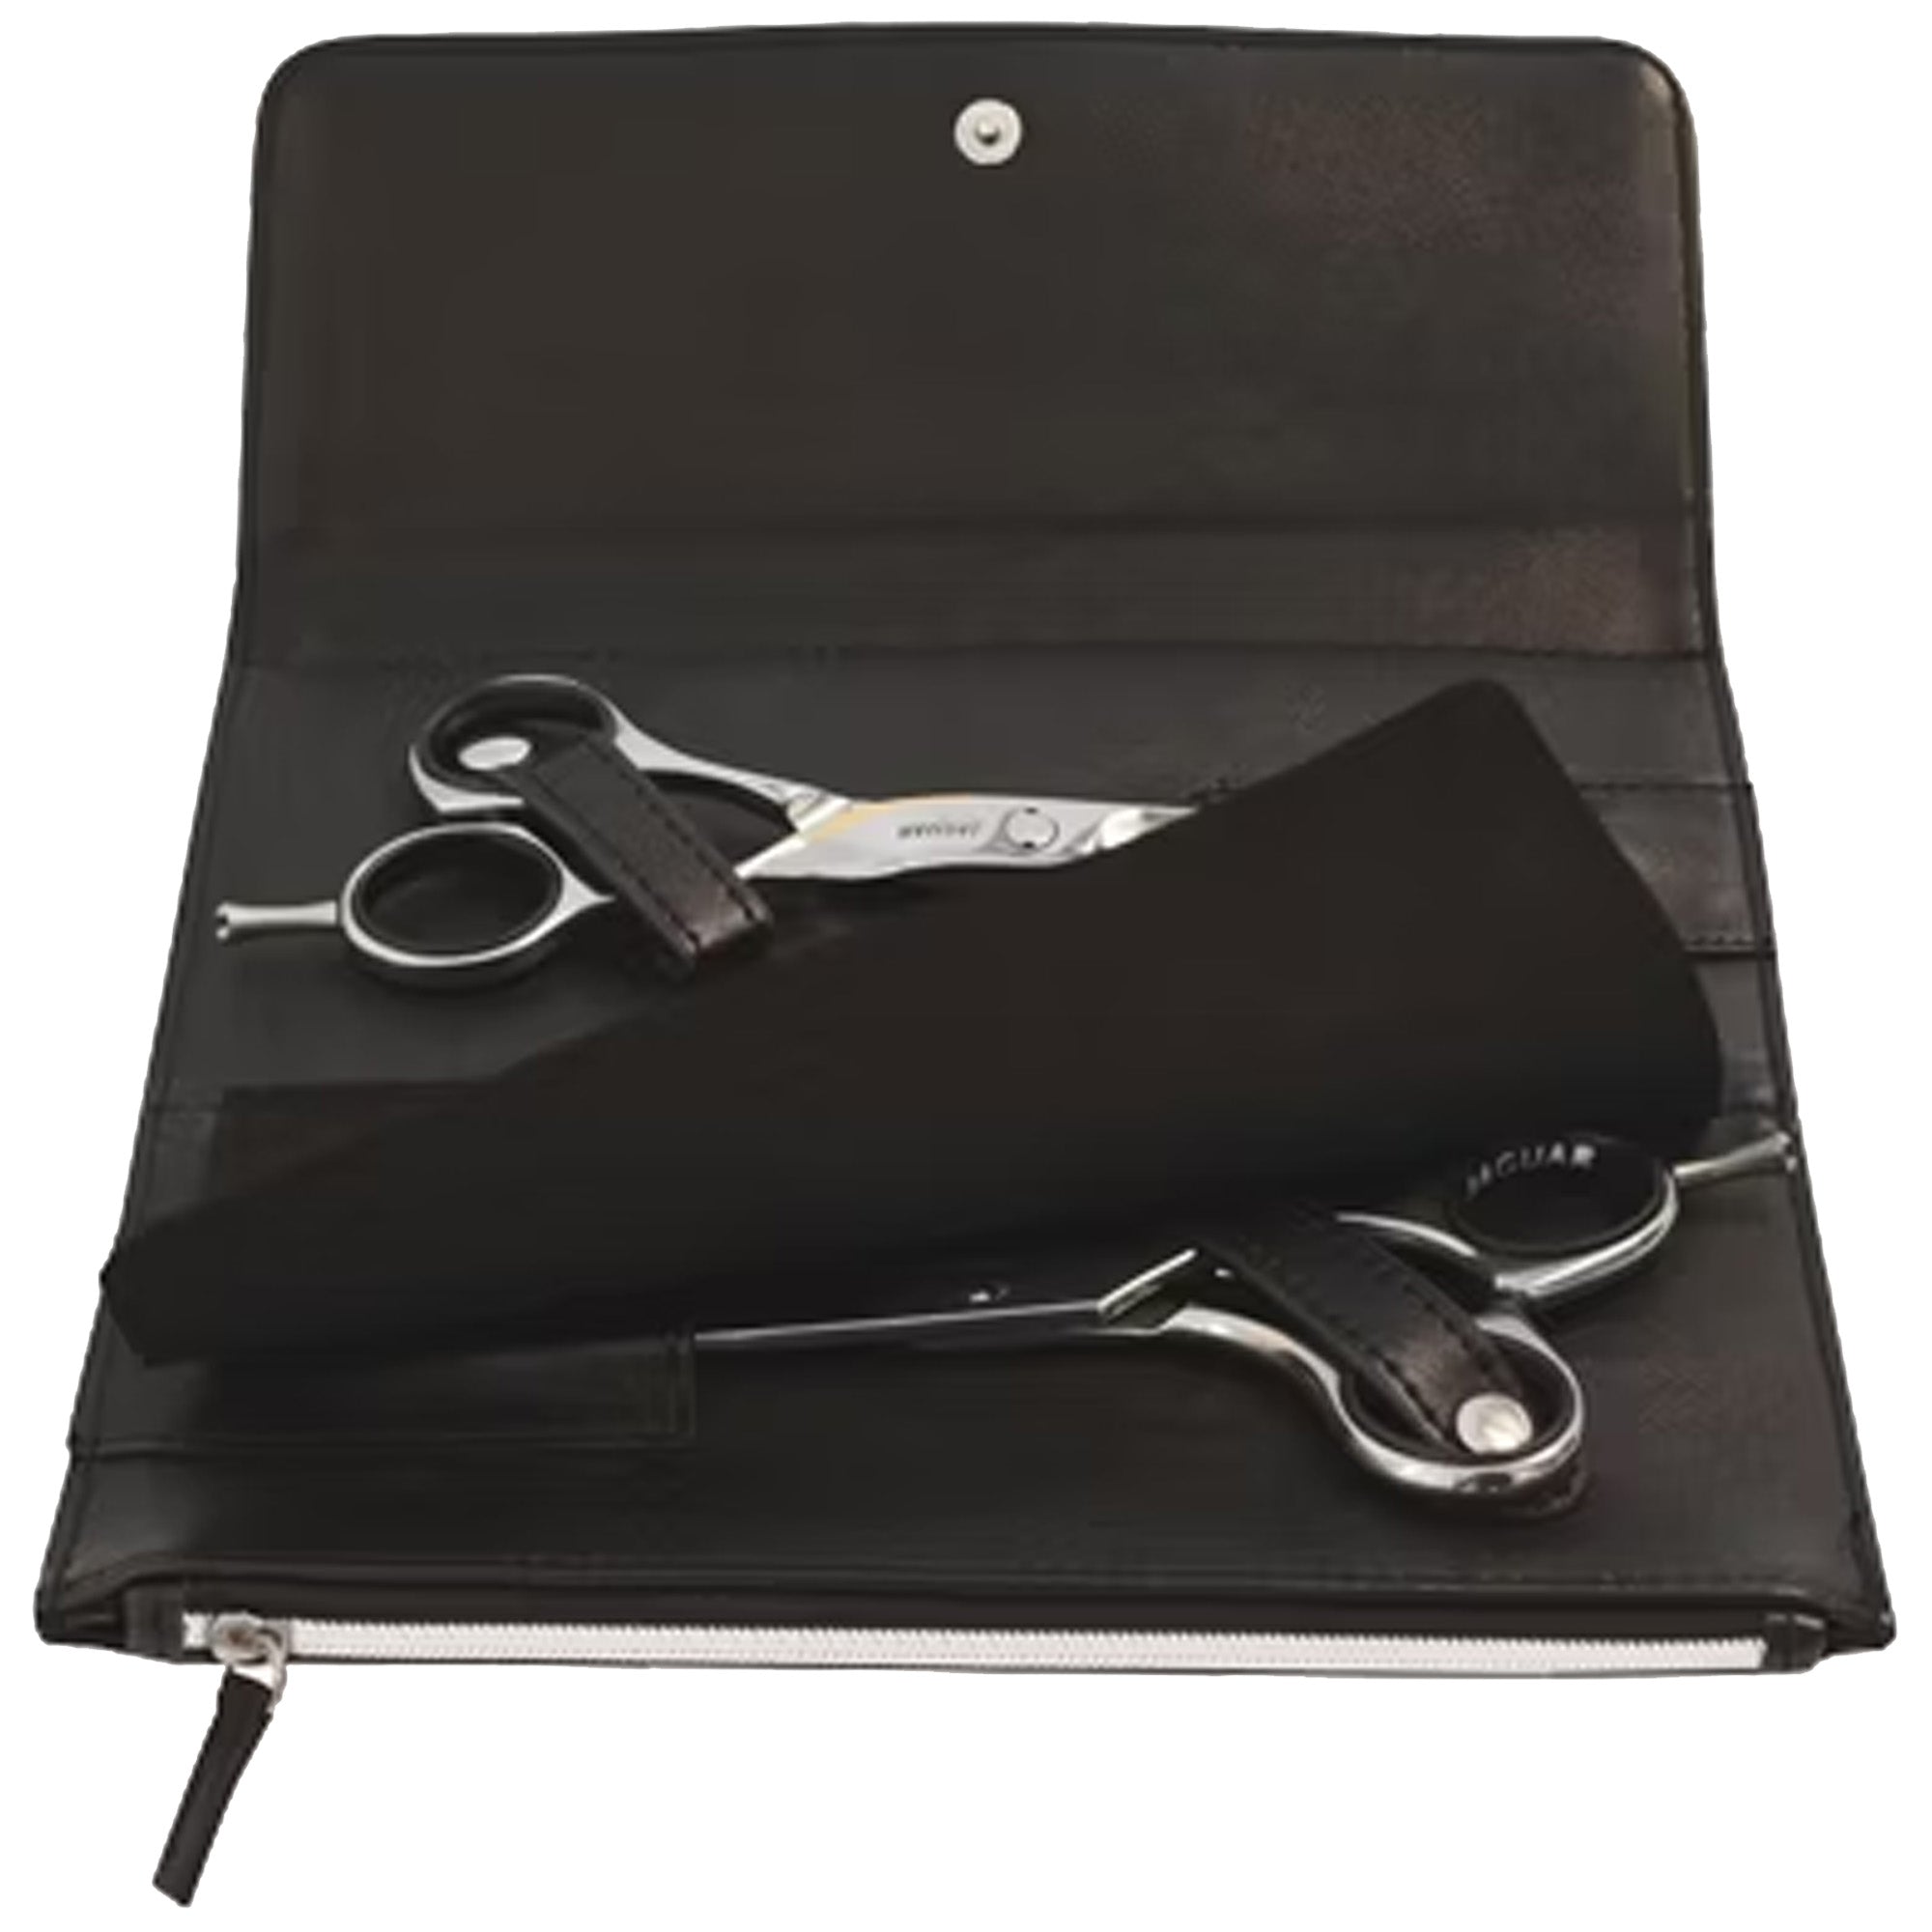 2 Scissors case